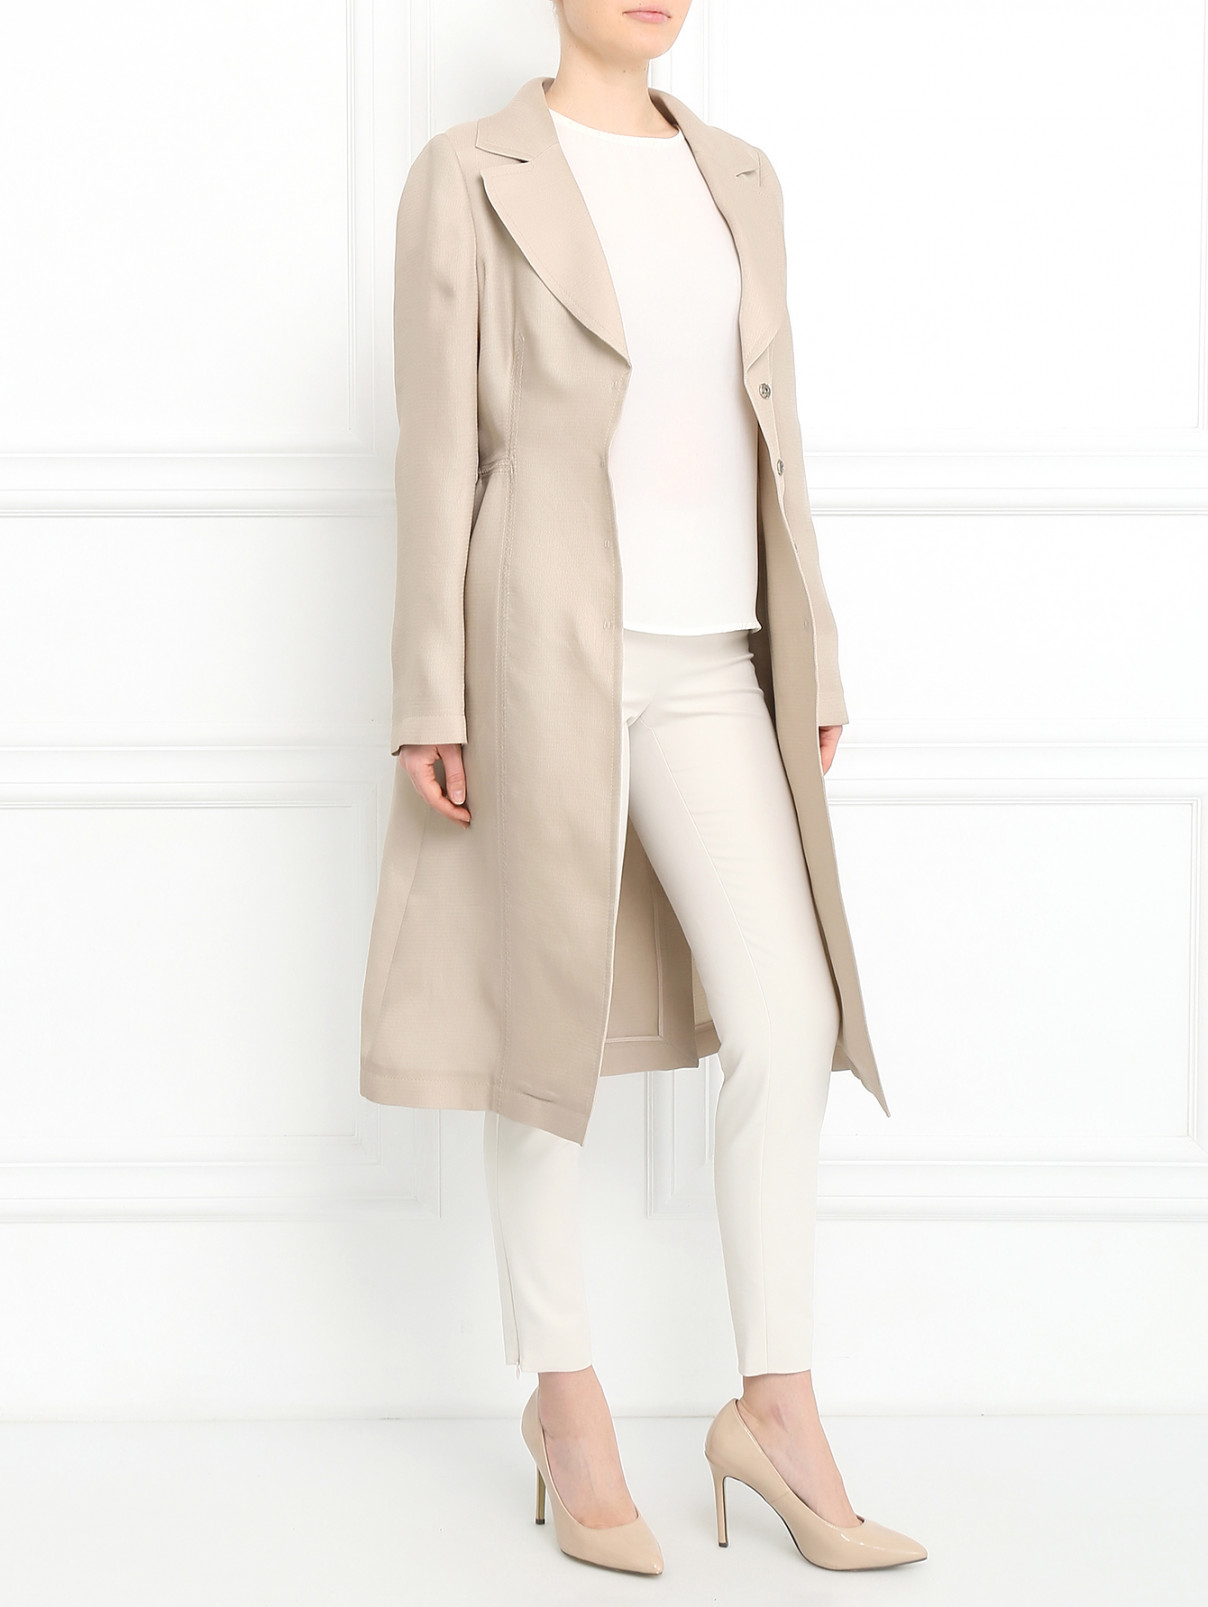 Пальто из шелка Alberta Ferretti  –  Модель Общий вид  – Цвет:  Бежевый